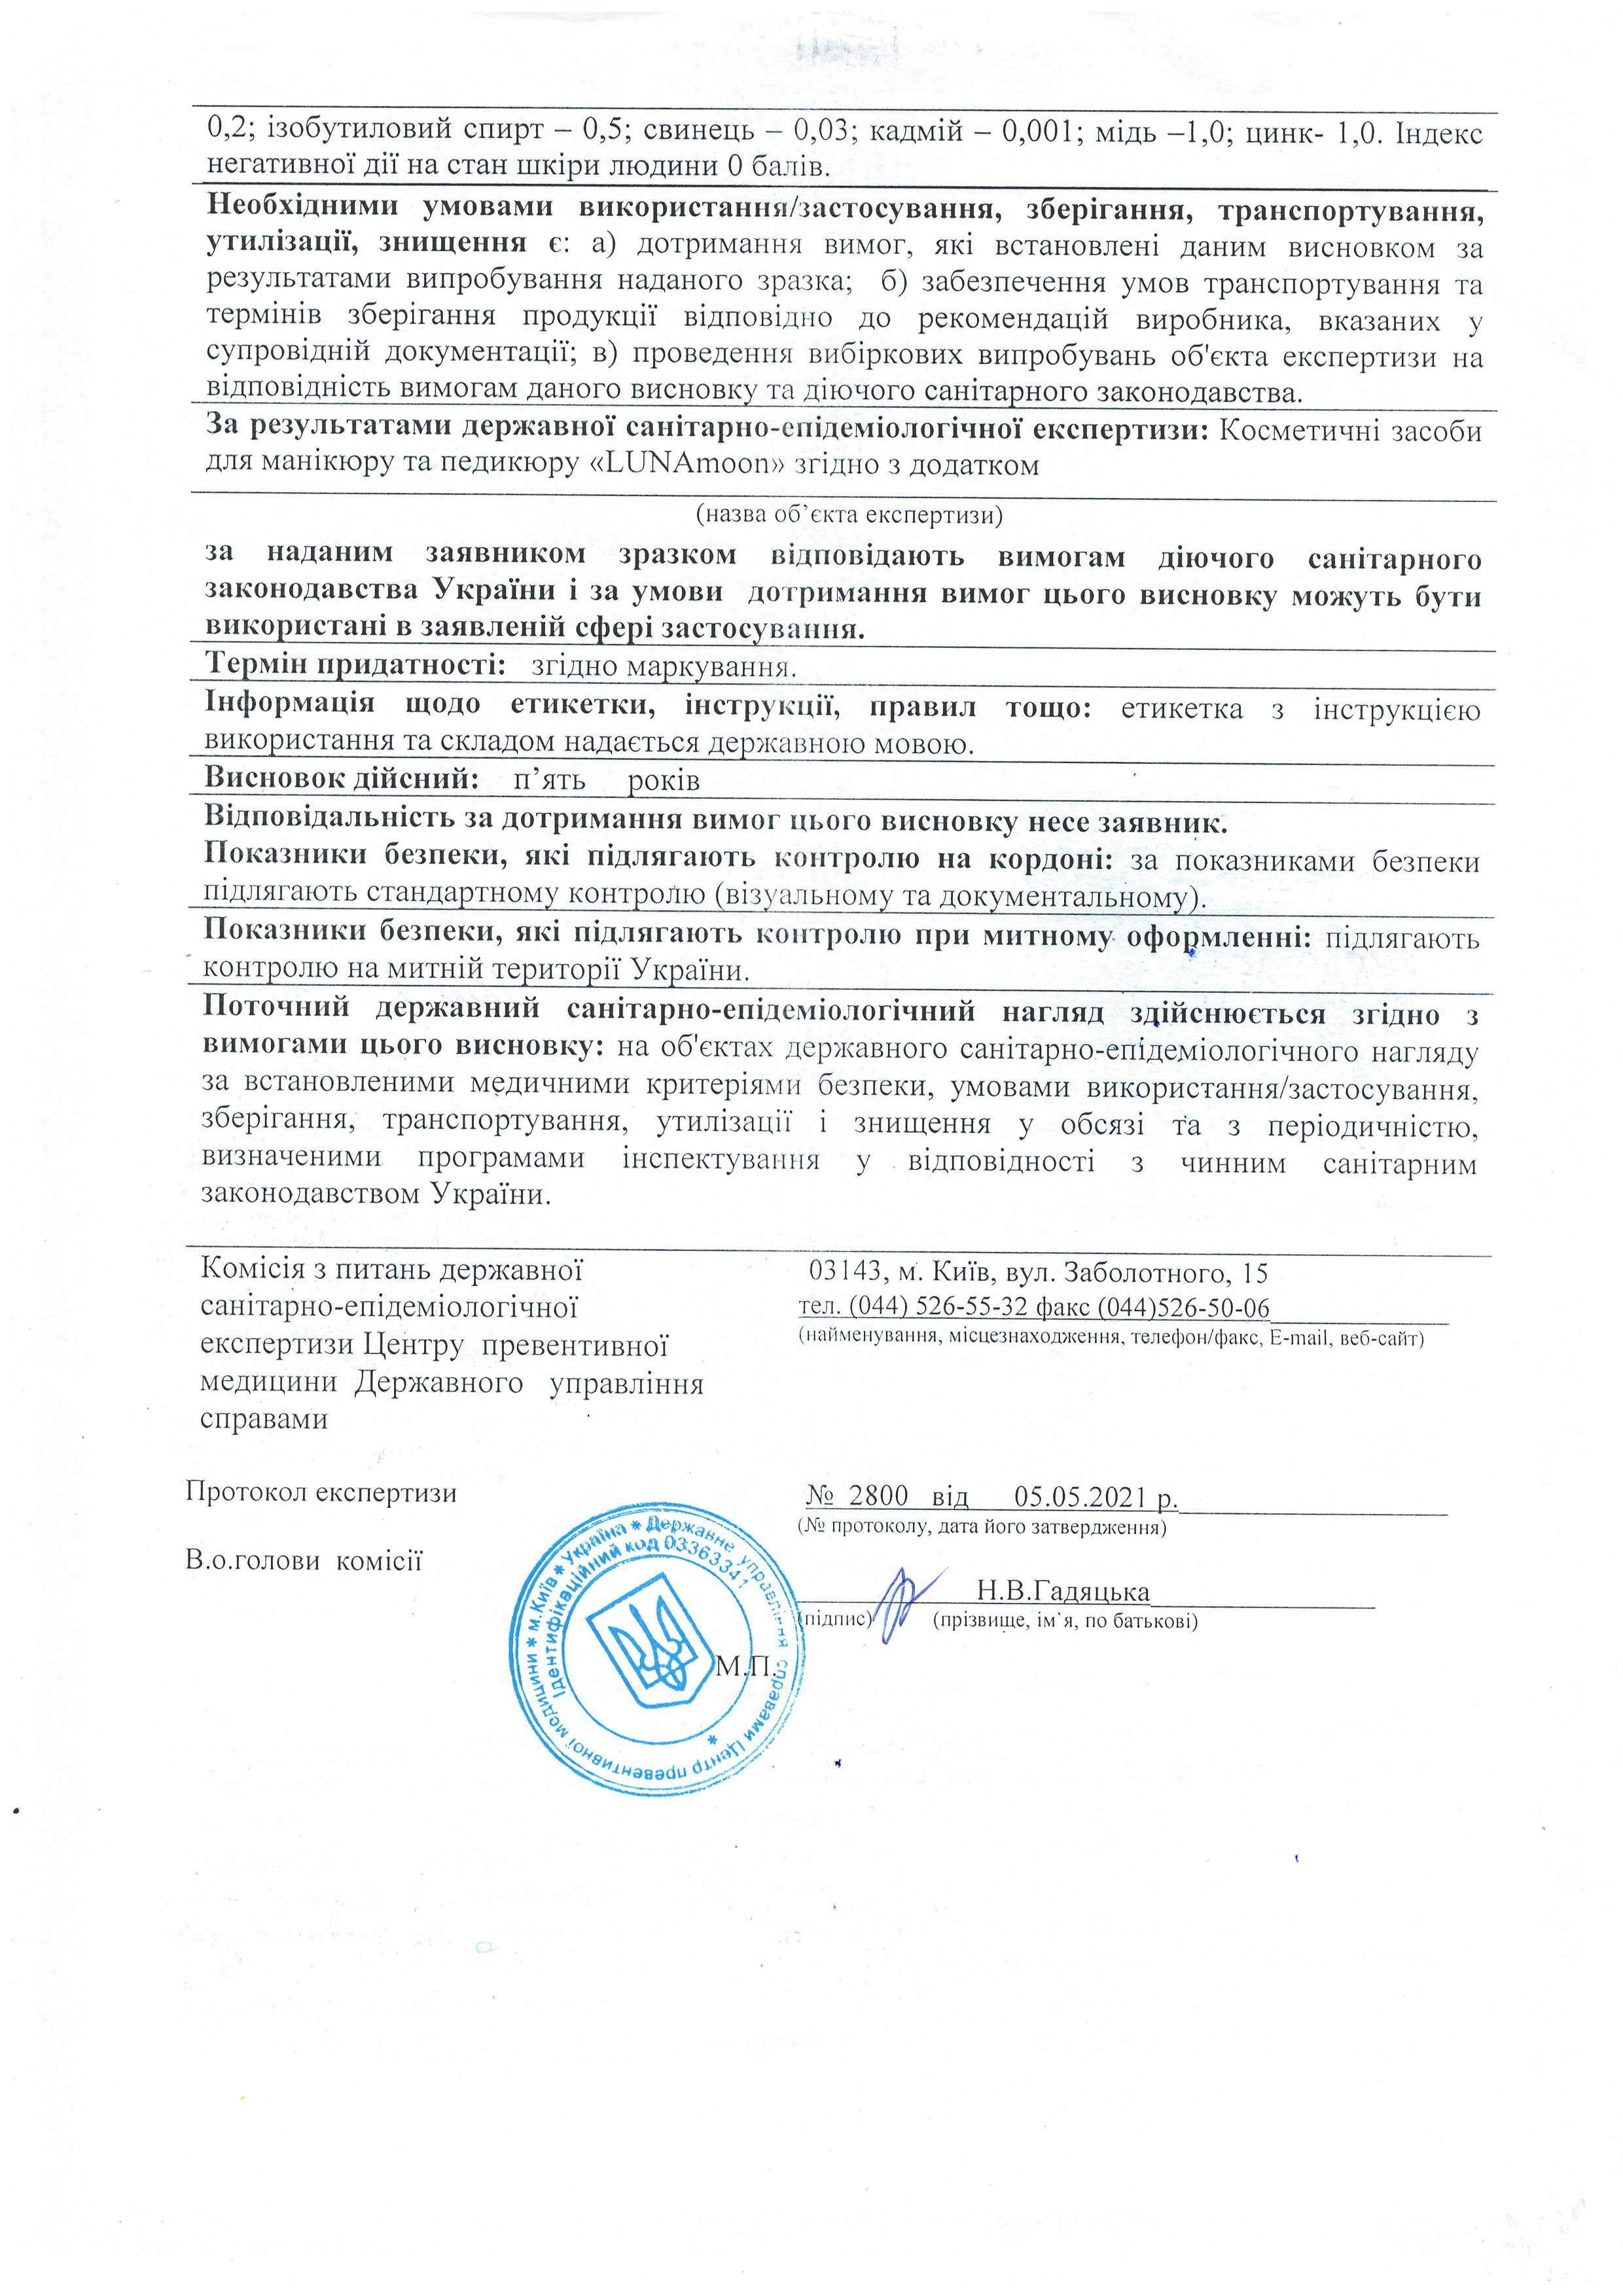 Сертификат качества на гель-лаки LUNAMoon, страница 2